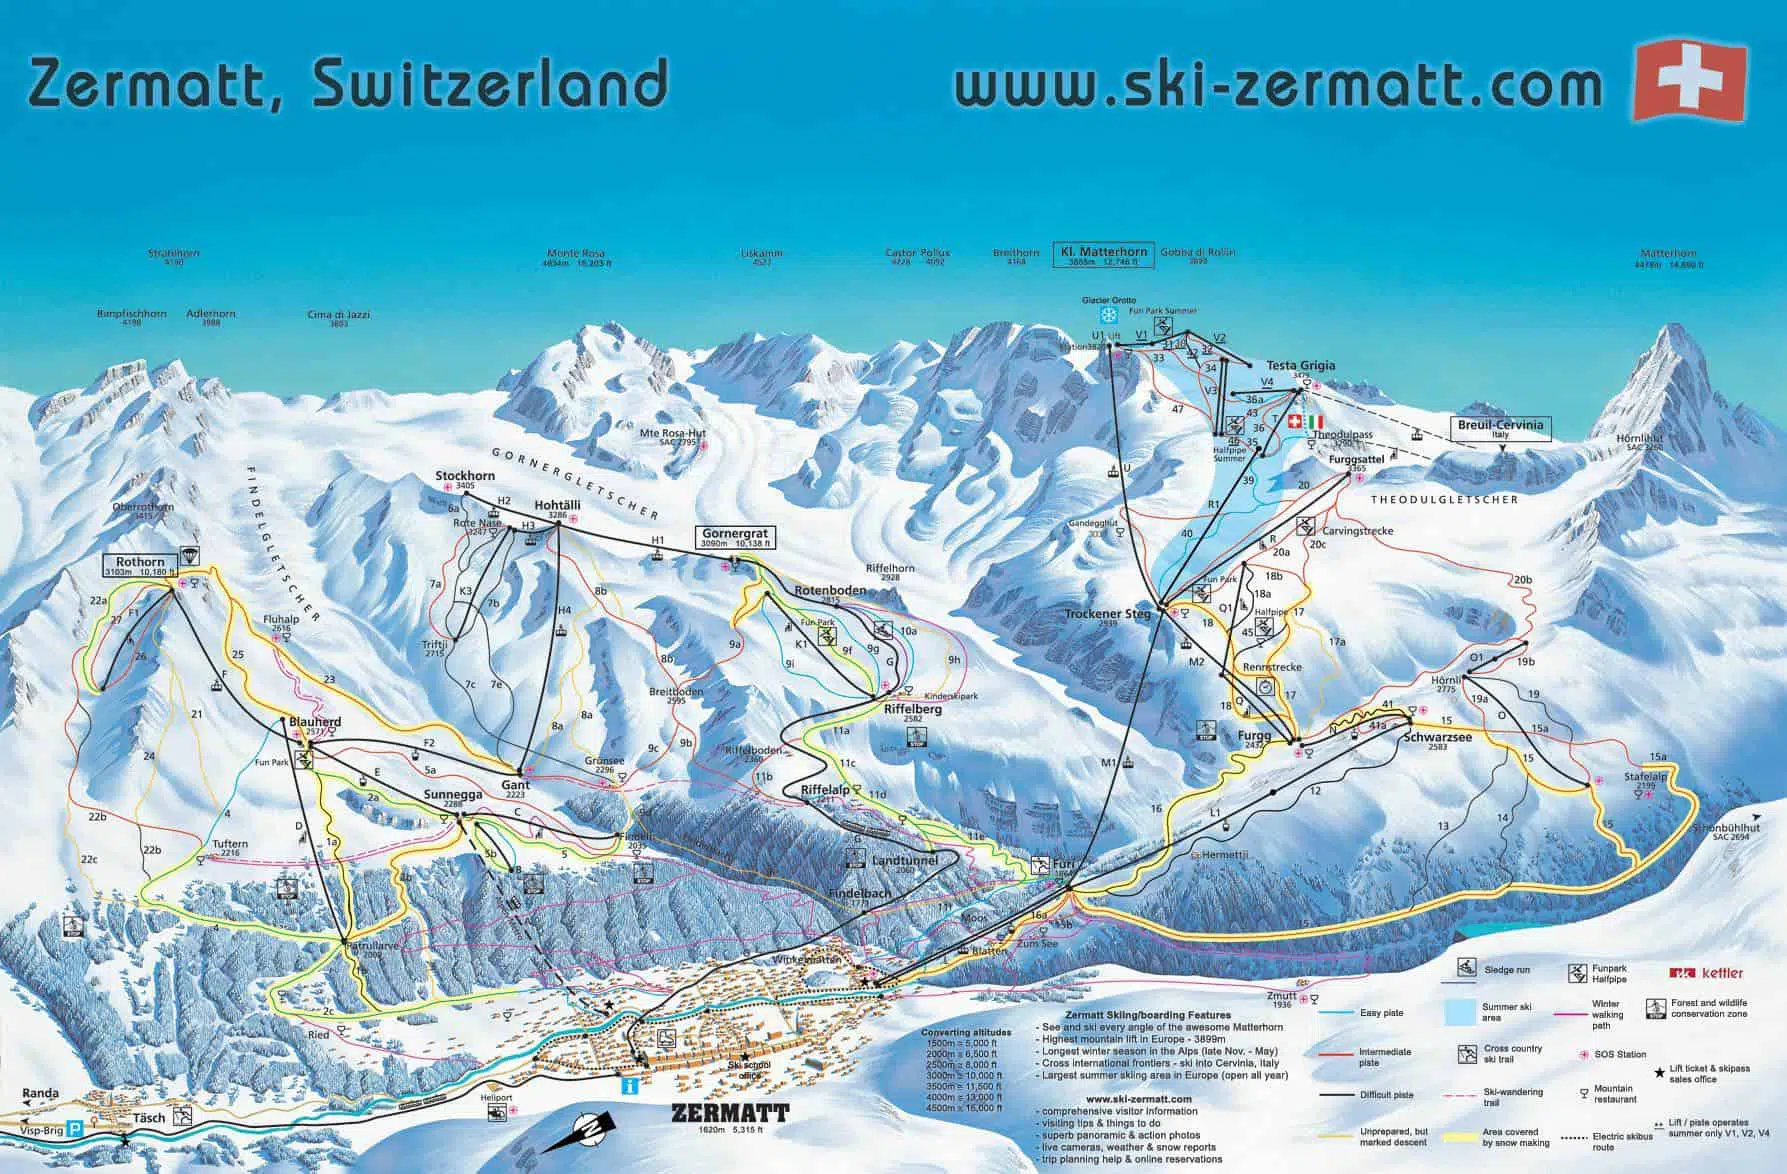 makker dræne Sinewi Zermatt og Cervinia deler Matterhorn - Travel Talk